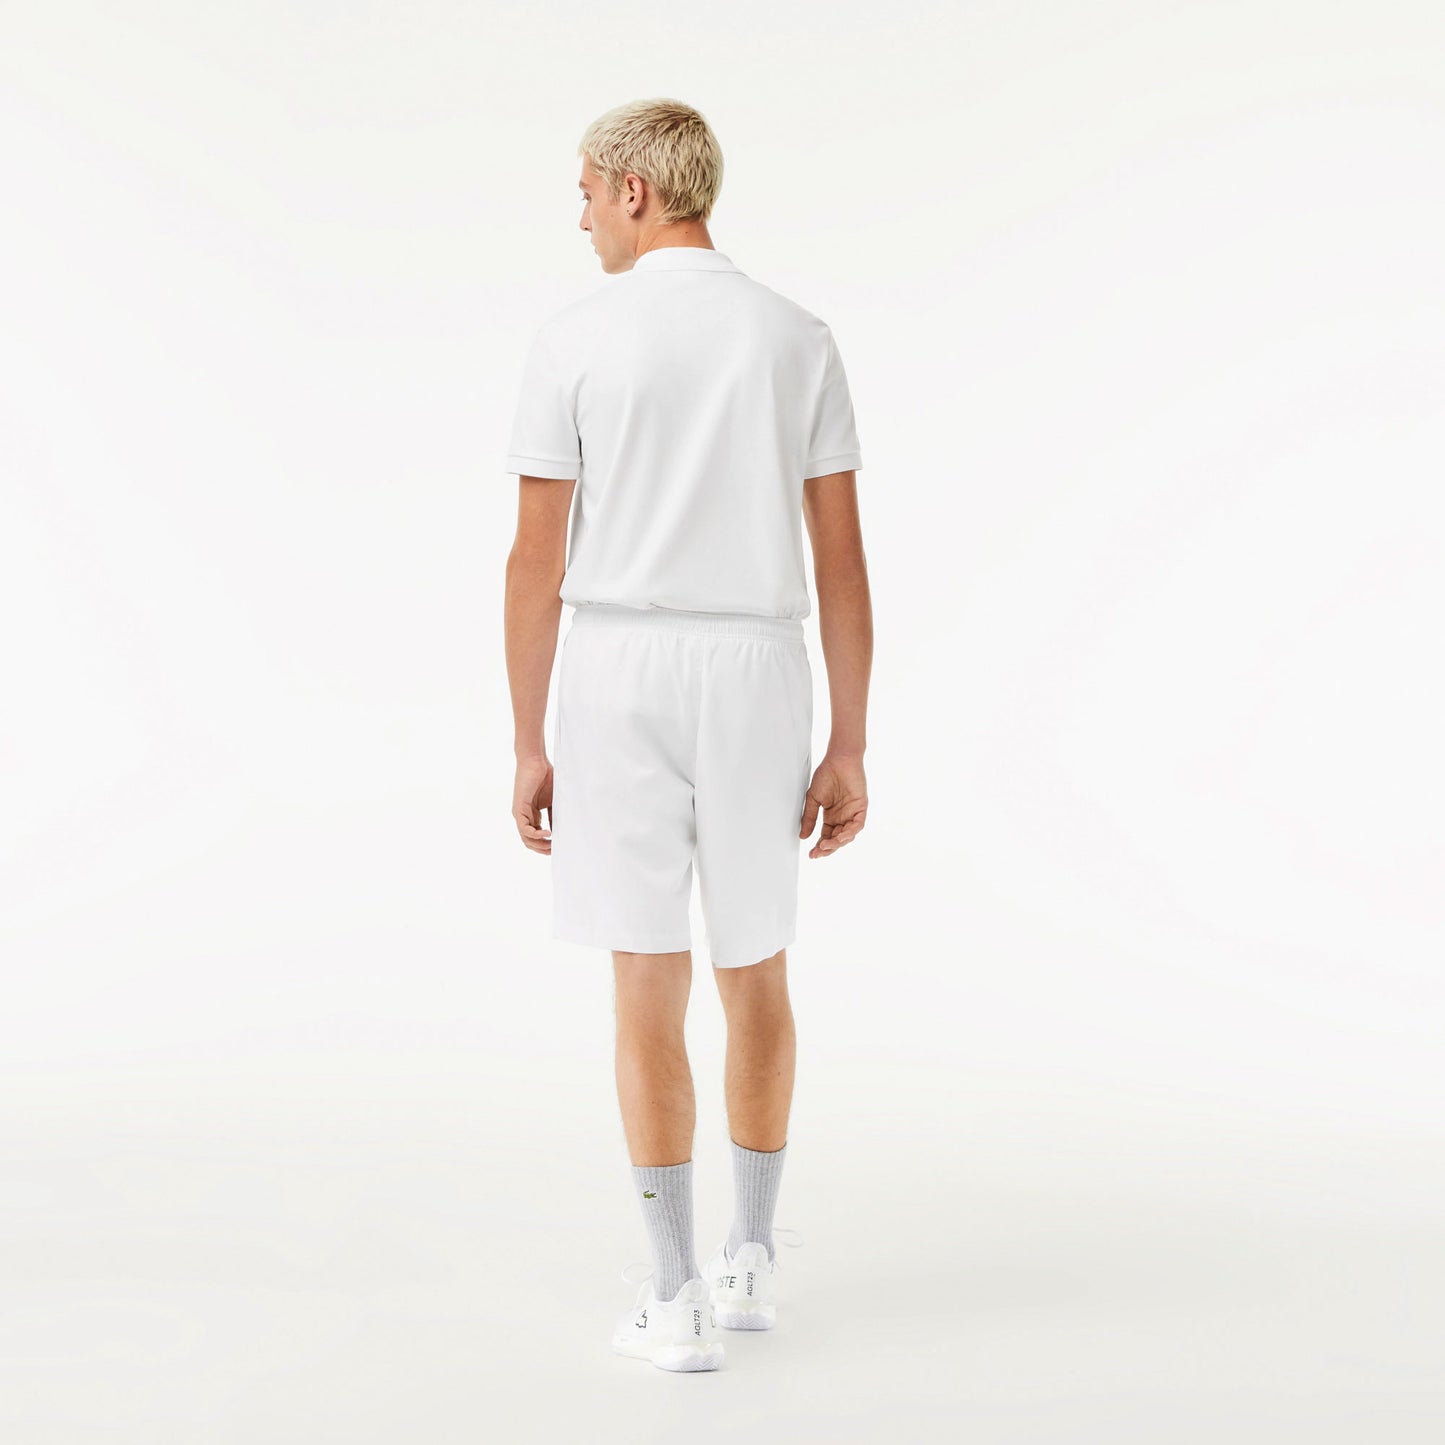 Lacoste Core Men's Tennis Shorts White (2)